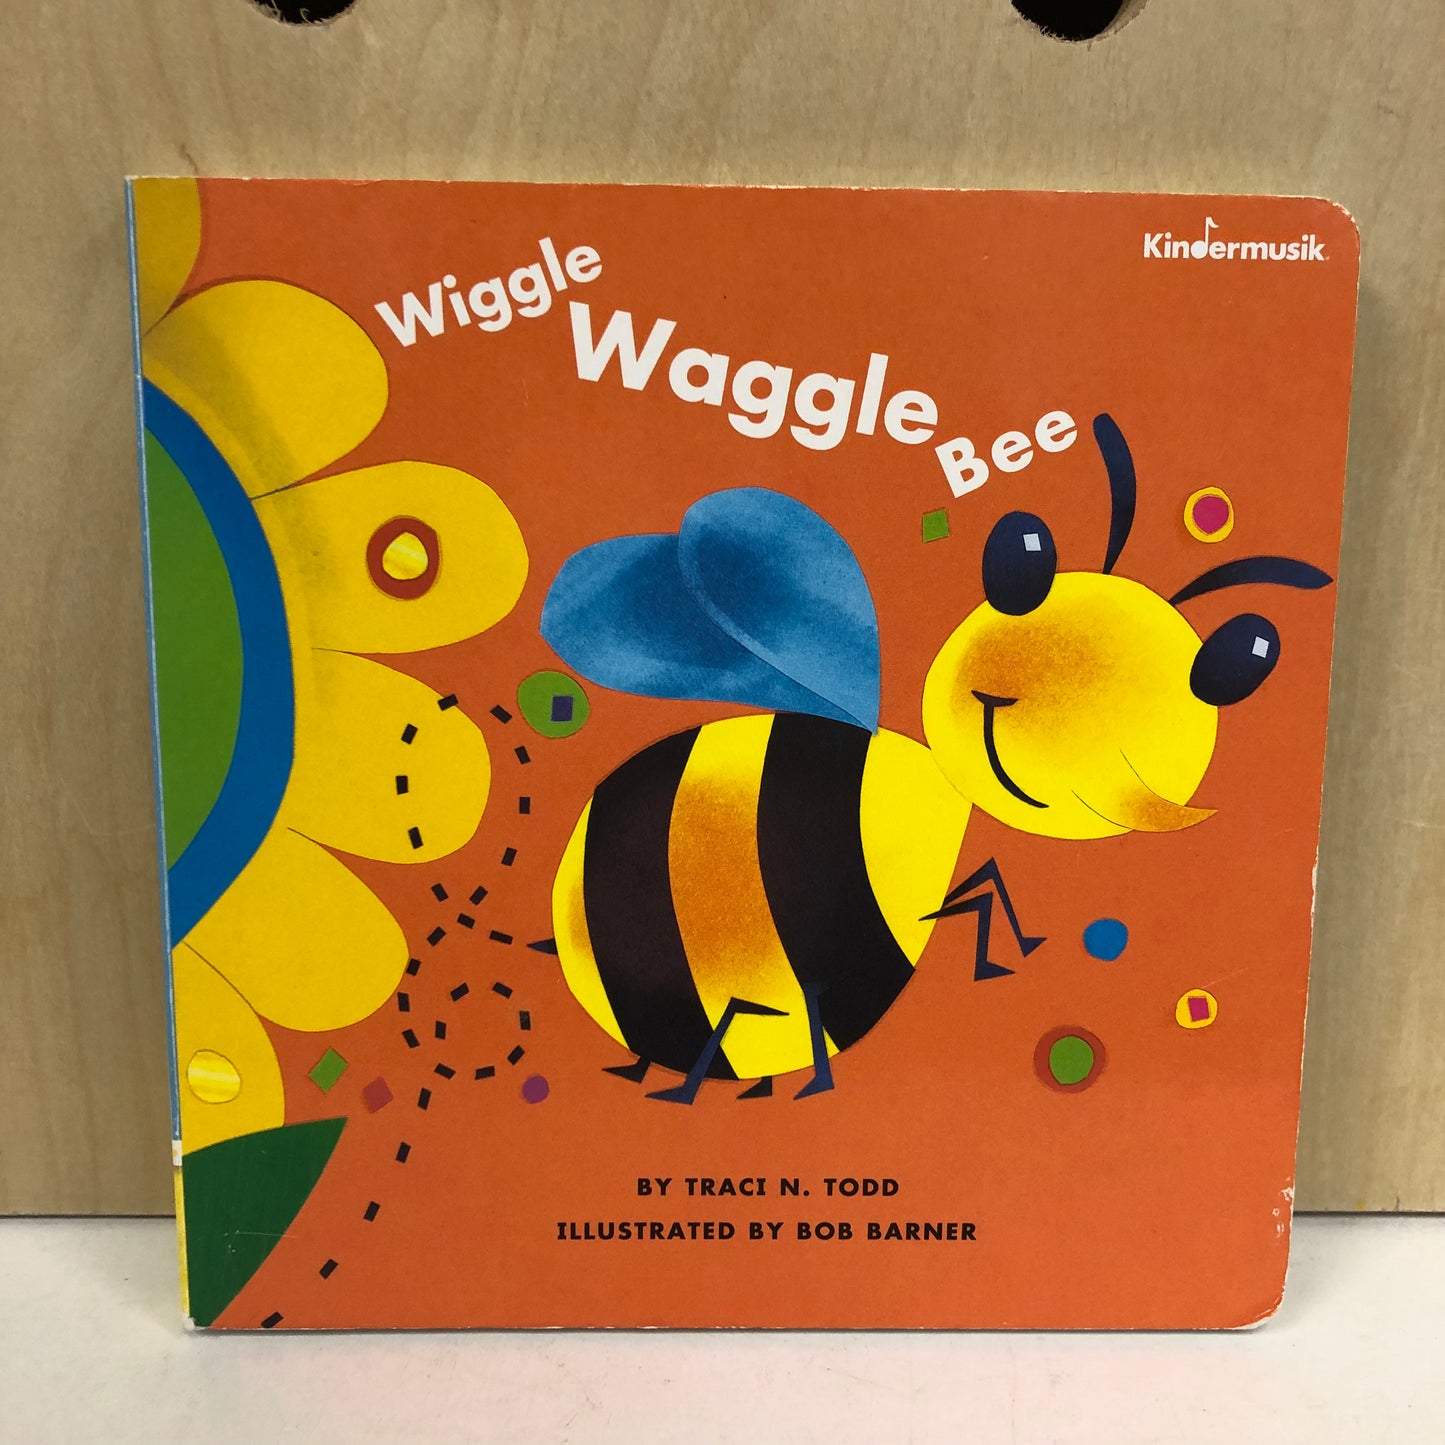 Wiggle Waggle Bee